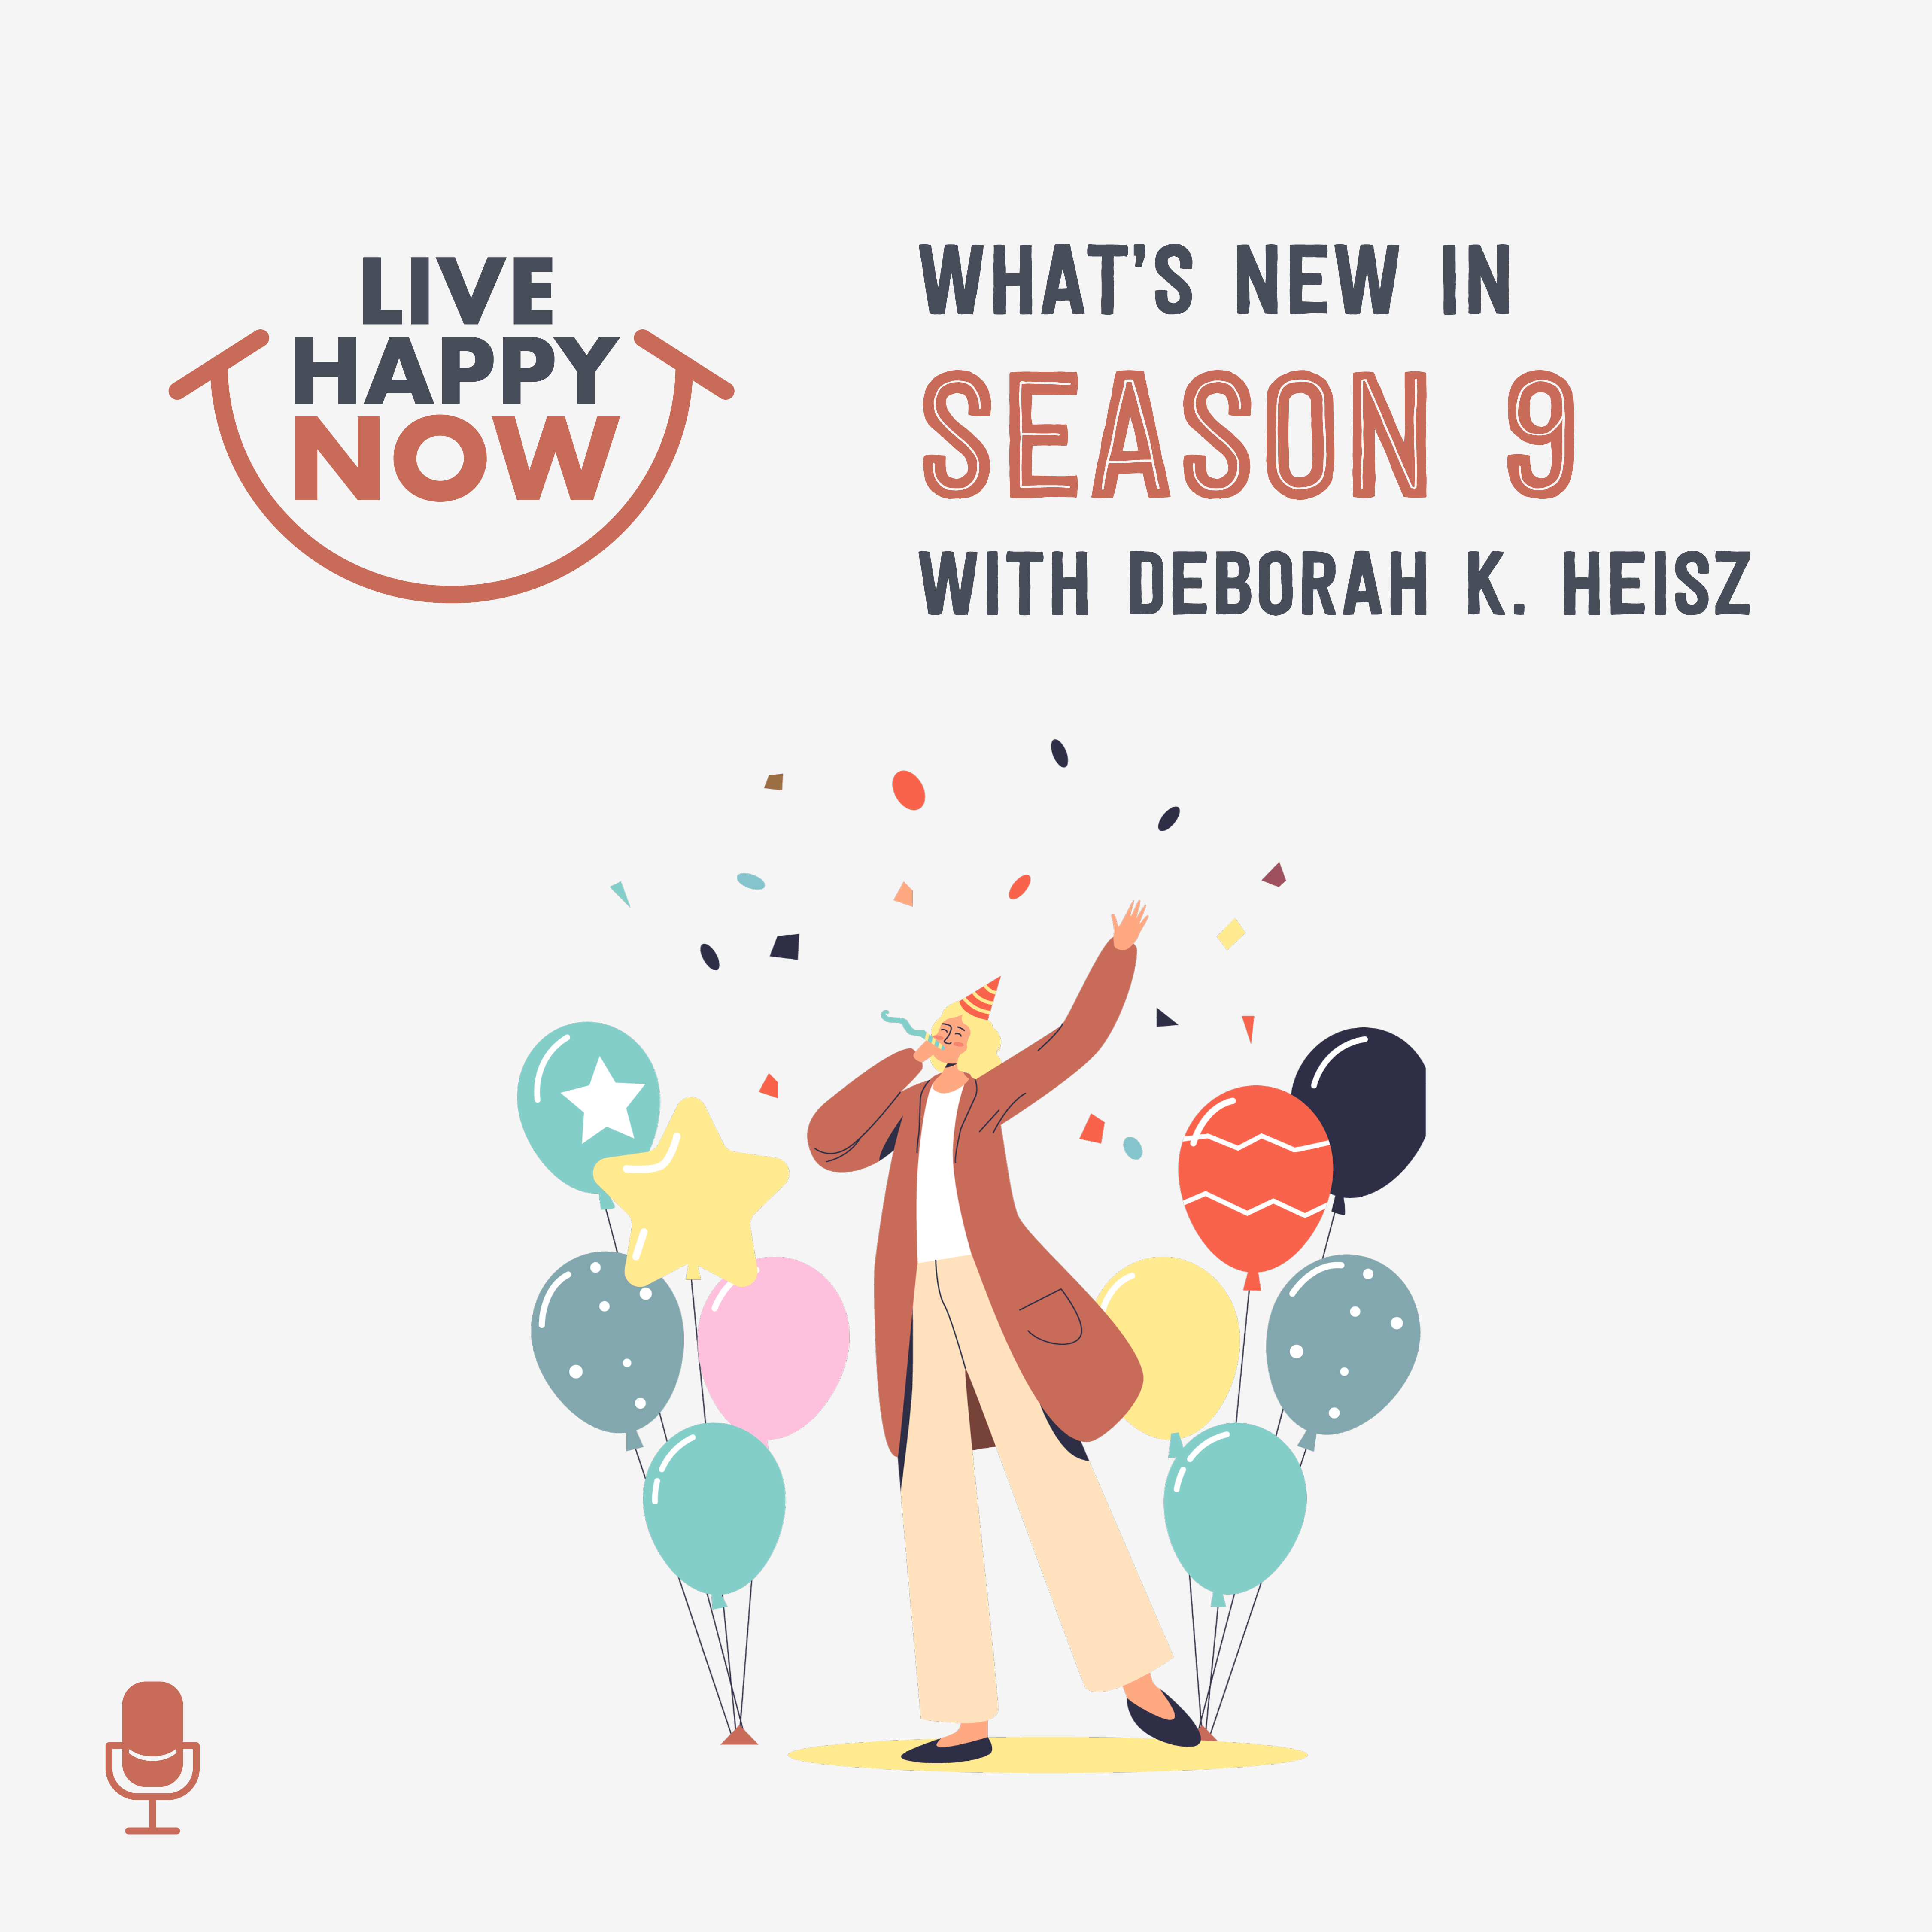 What's New in Season 9 With Deborah K. Heisz